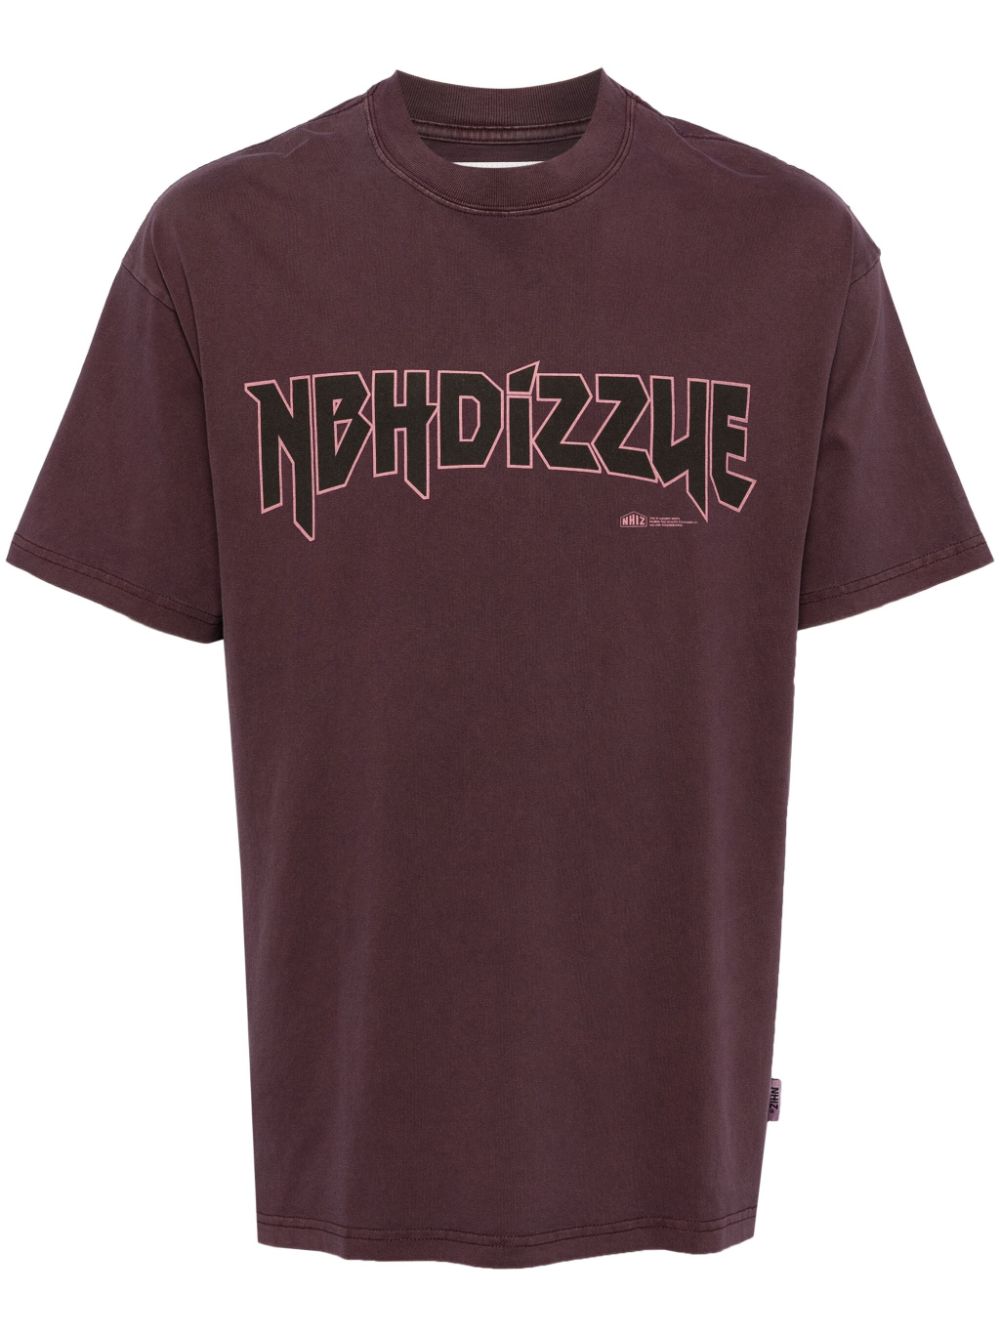 izzue x Neighborhood cotton T-shirt - Purple von izzue